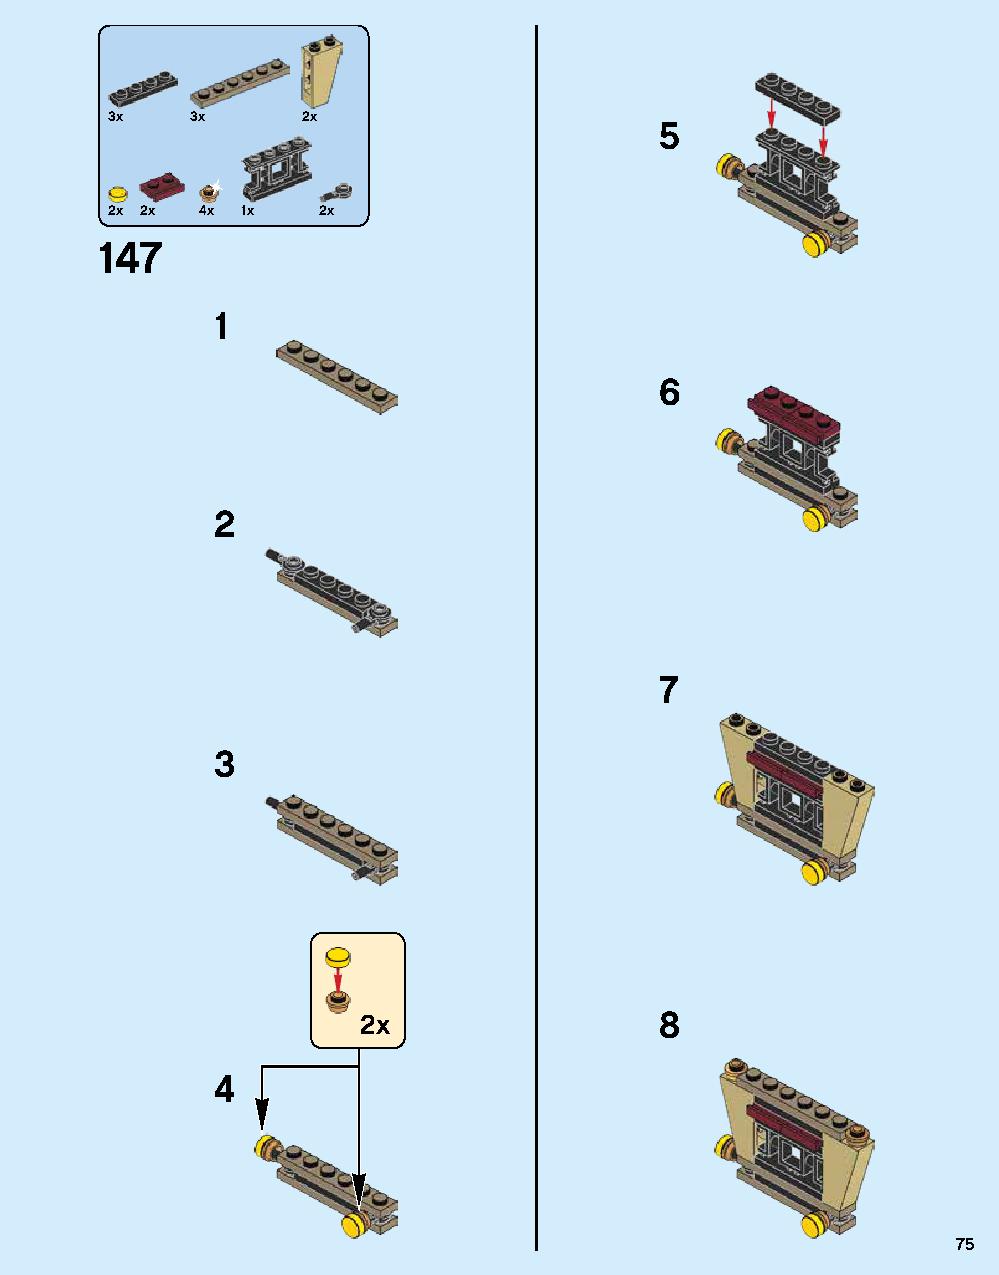 ニンジャゴー シティ 70620 レゴの商品情報 レゴの説明書・組立方法 75 page